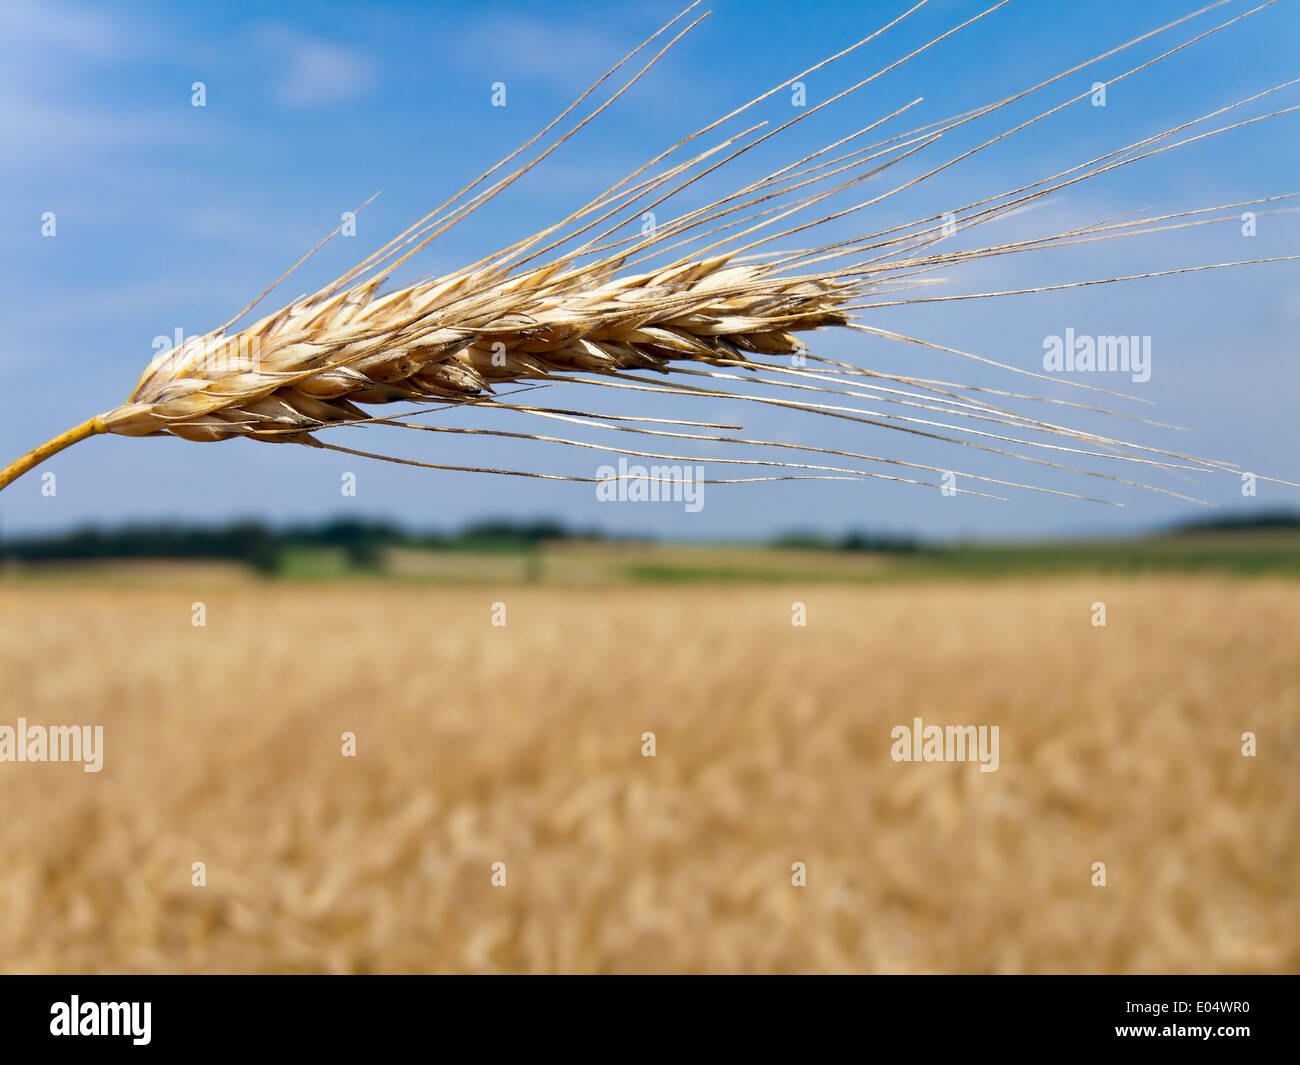 Grain field with barley ear in buzzer, Getreide Feld mit Gersten Ähre im Sommer Stock Photo